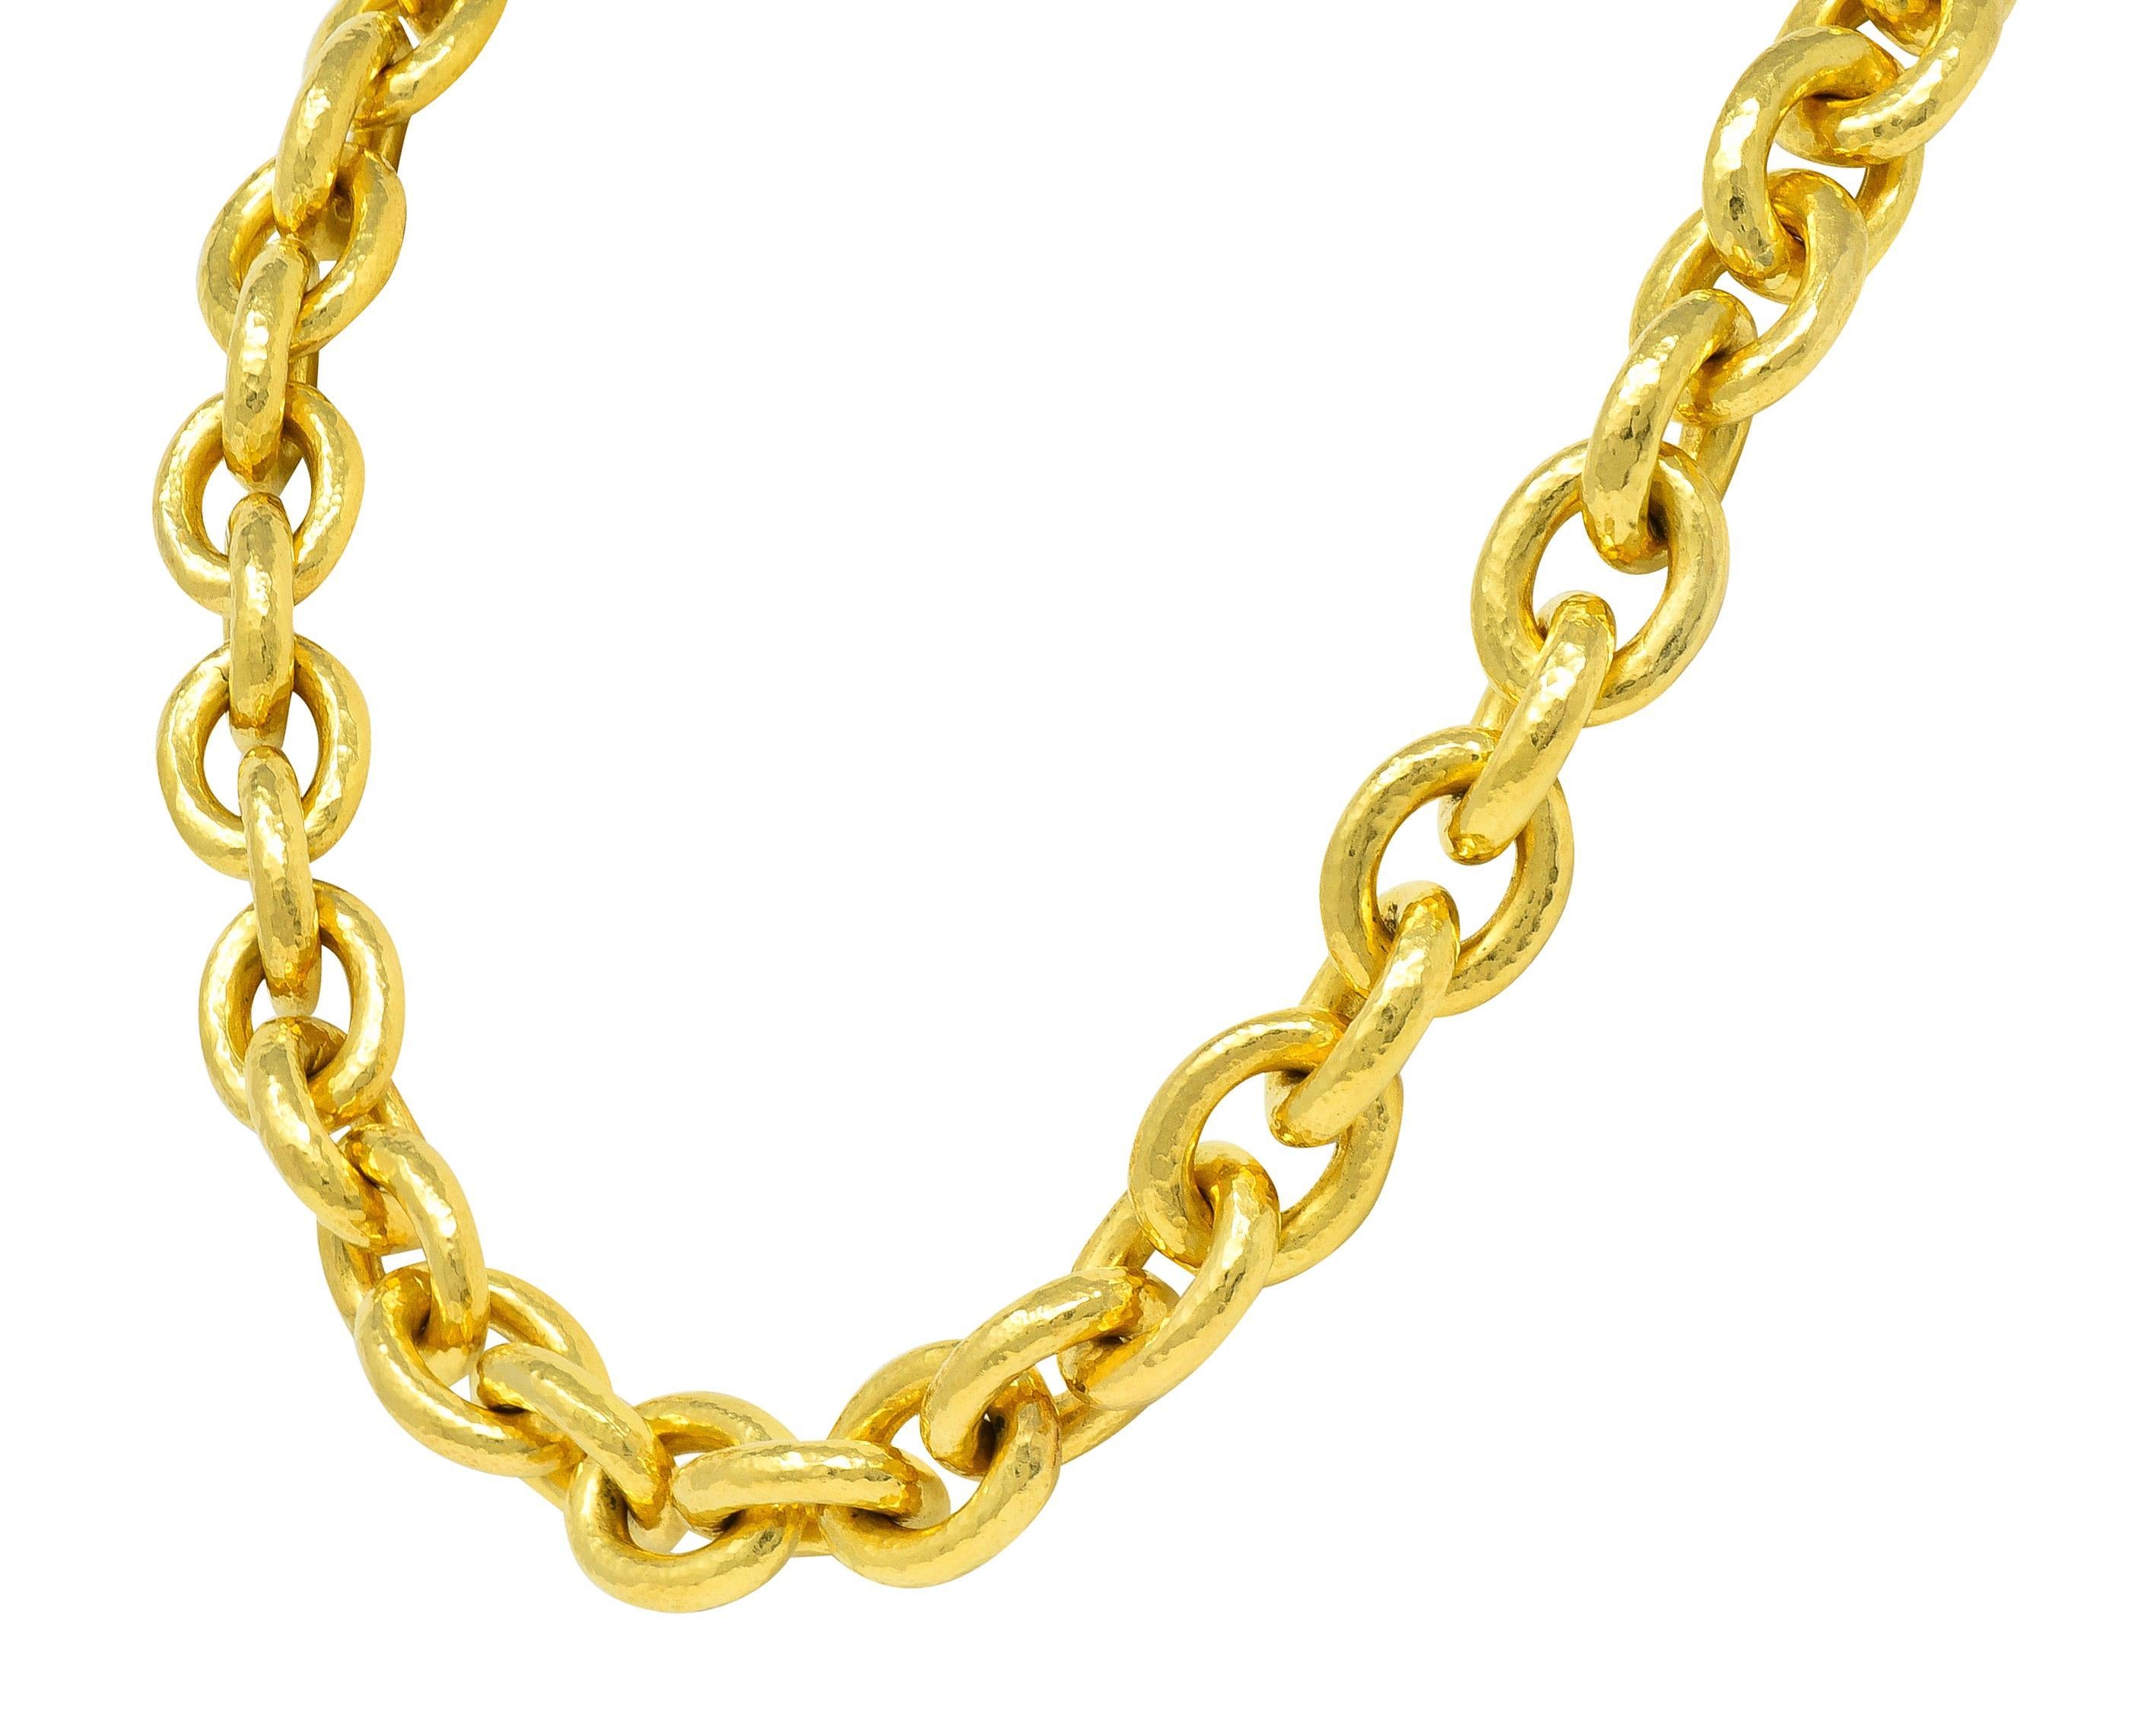 19 karat gold chain